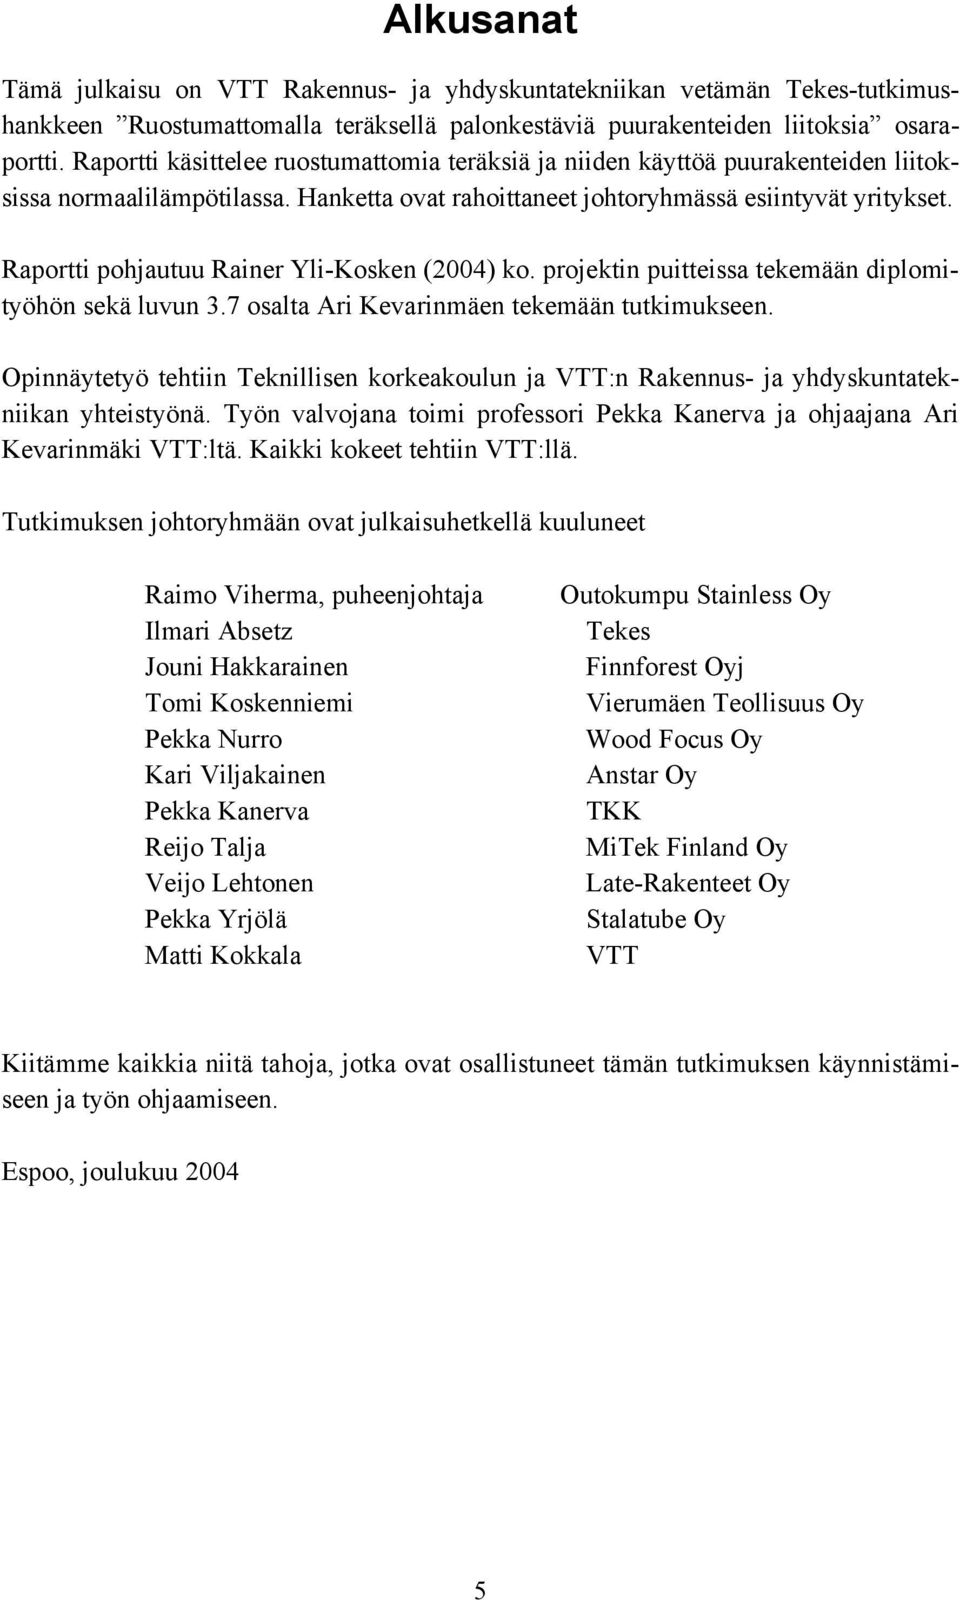 Raportti pohjautuu Rainer Yli-Kosken (2004) ko. projektin puitteissa tekemään diplomityöhön sekä luvun 3.7 osalta Ari Kevarinmäen tekemään tutkimukseen.